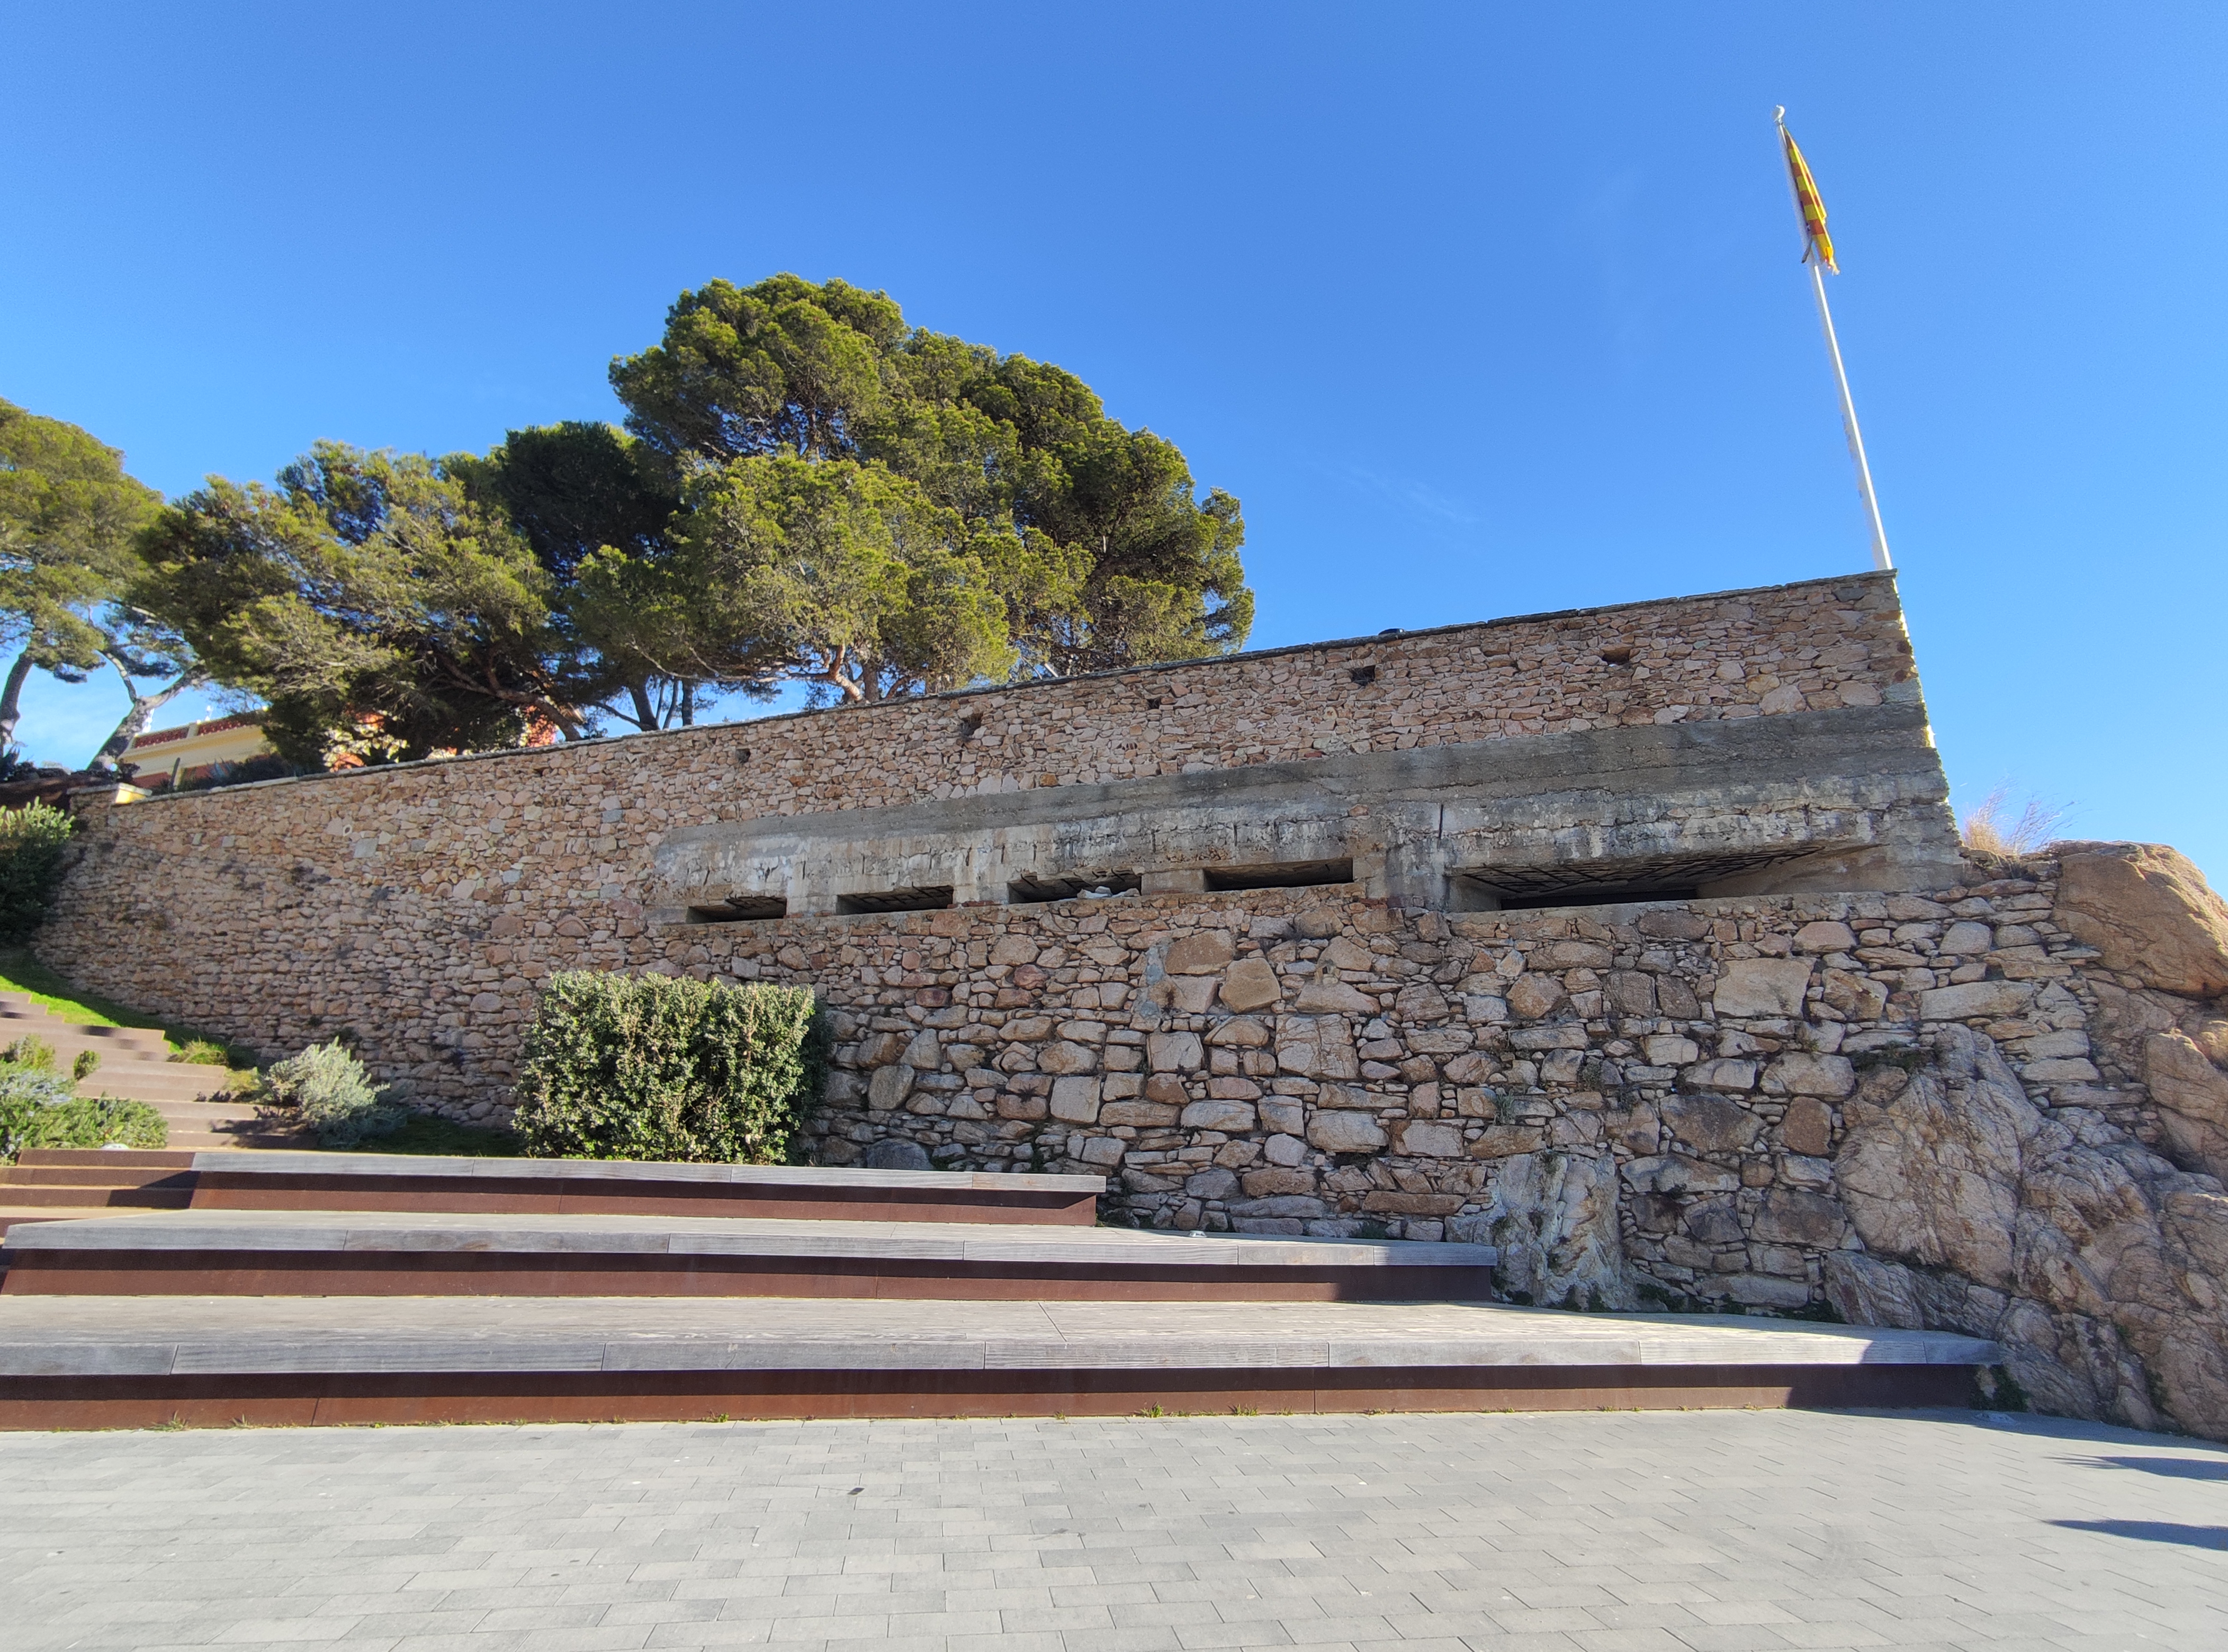 Trobem fortificacions de defensa arreu de la costa catalana, com aquesta a Sant Feliu de Guíxols. / A.C. - GRIEGC